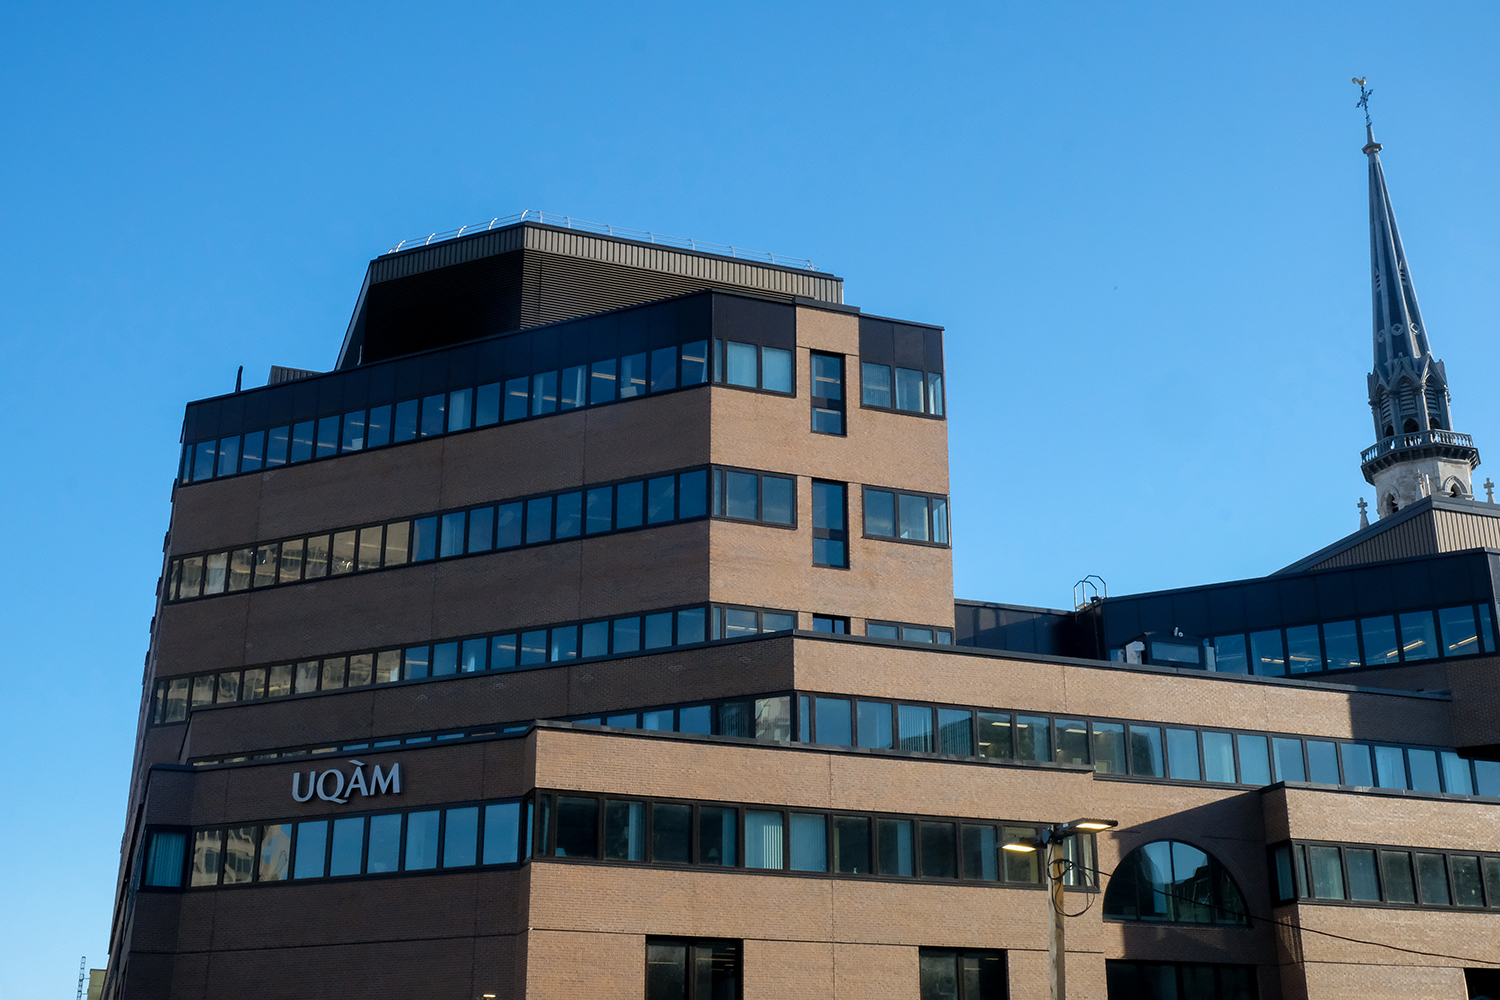 L’UQAM comporte plusieurs bâtiments regroupant les différentes facultés et départements de l’université. Au total, l’université compte plus de 40 000 étudiants et étudiantes © Globe Reporters